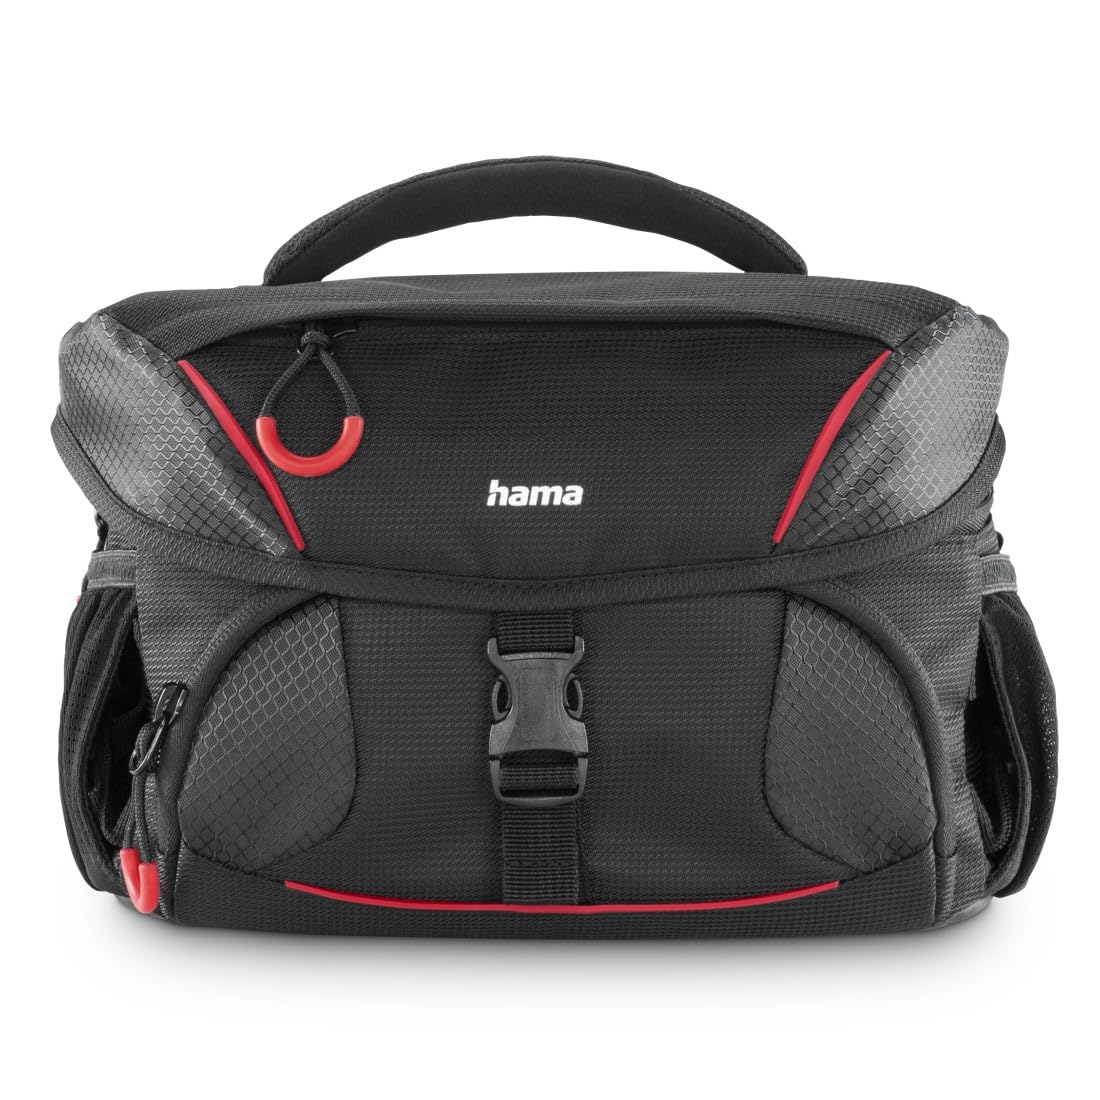 Hama Kameratasche (Fototasche für digitale SLR- und Systemkameras mit Zubehör, Halterung für Kamerastativ, Regenschutz, gepolstert, Tragegriff, Trolleyband, abwischbarer Boden, ergonomisch) schwarz